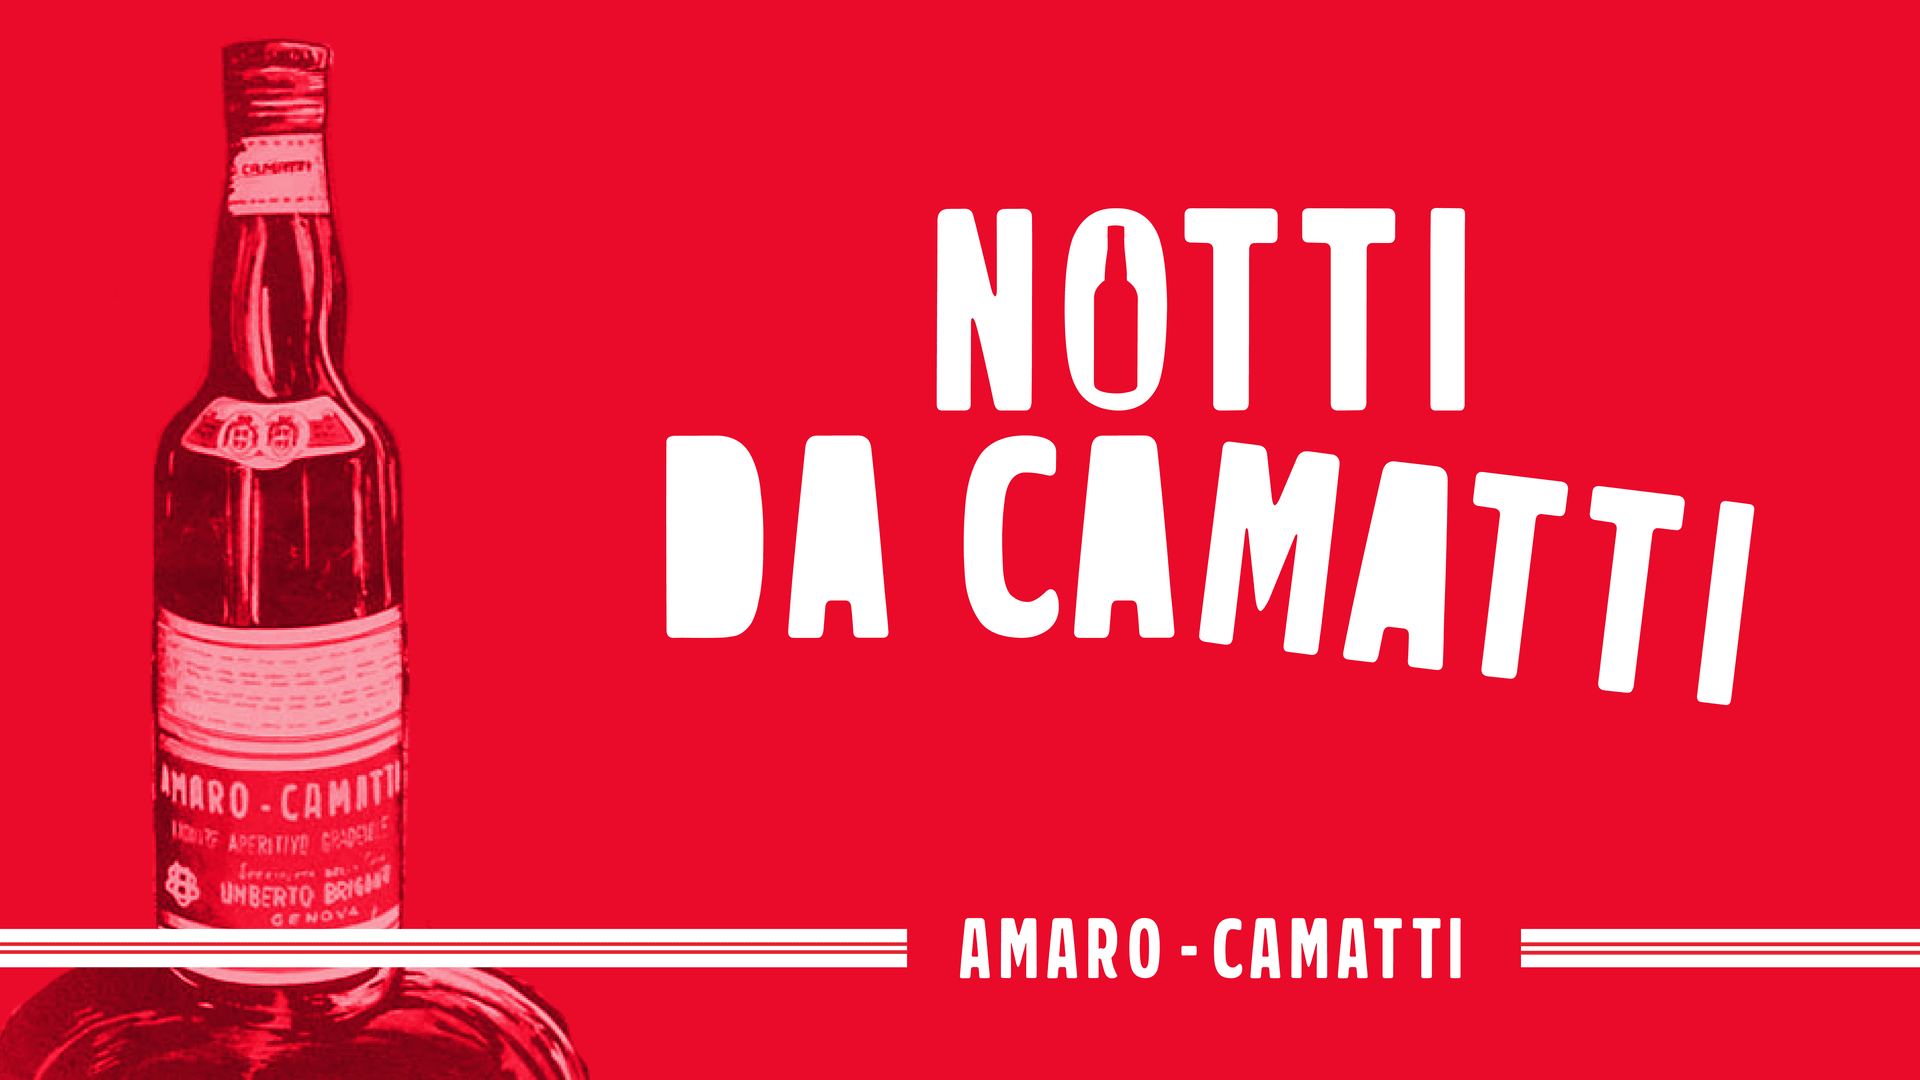 Camatti Nights: seven events in Liguria to rediscover Amaro Camatti - Amaro  Camatti